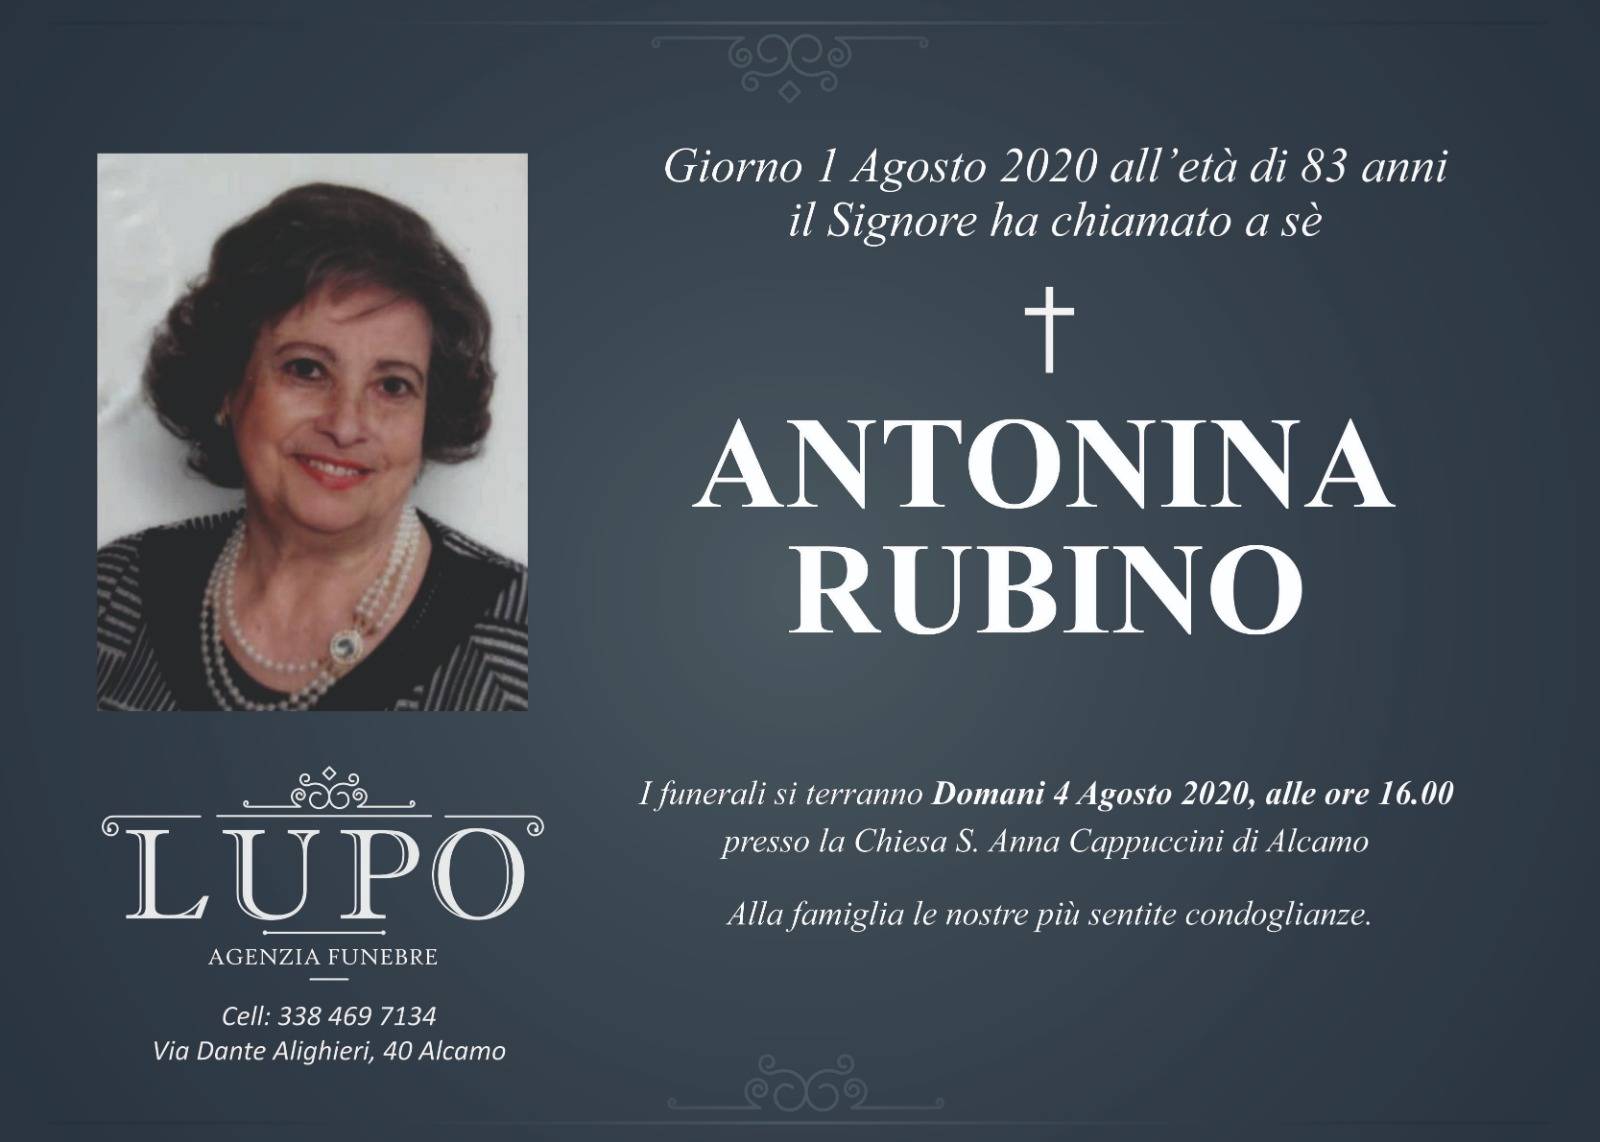 Antonina Rubino